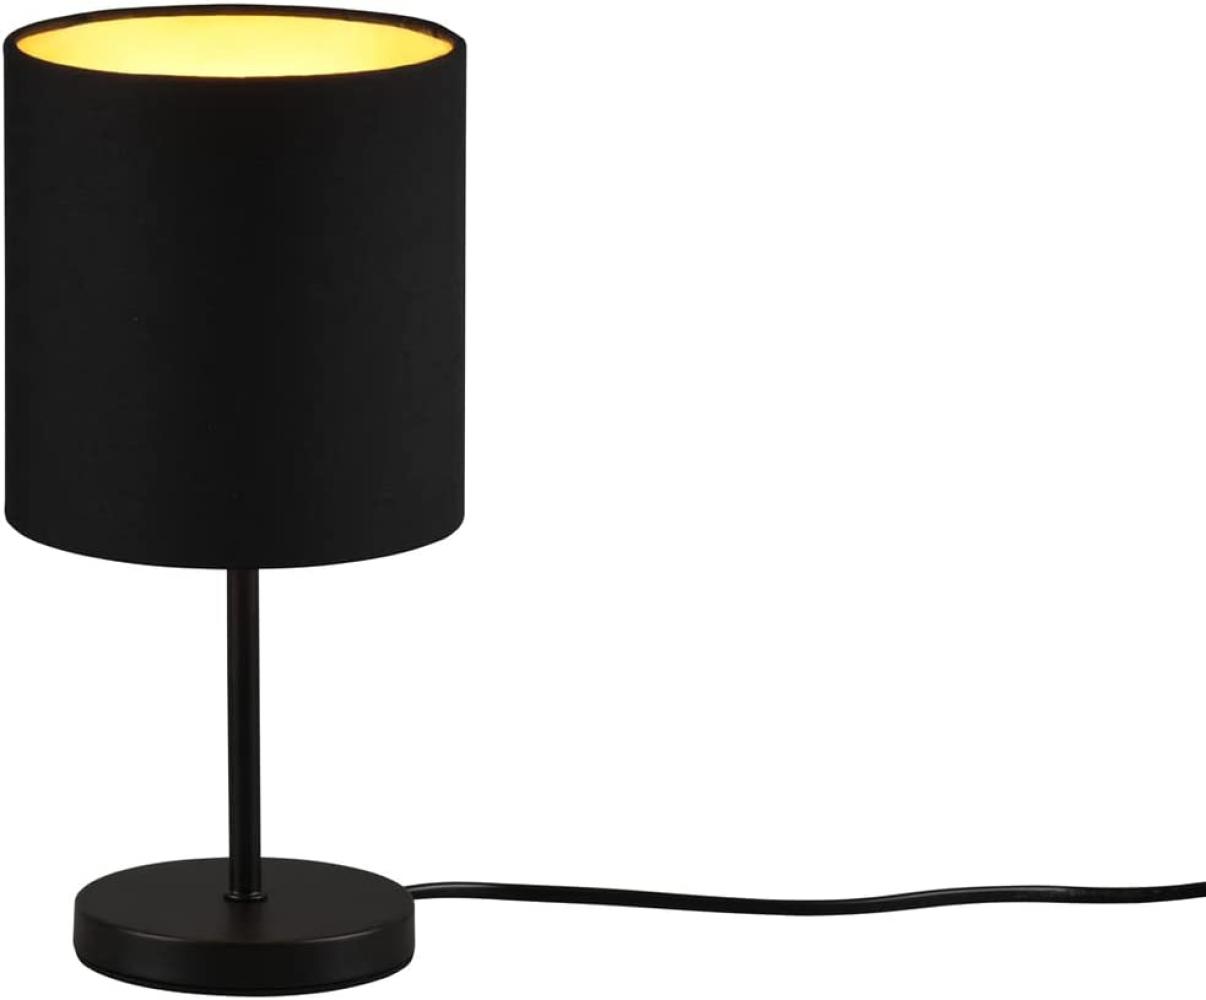 LED Tischleuchte mit Stoffschirm in Schwarz innen Gold, 28cm hoch Bild 1